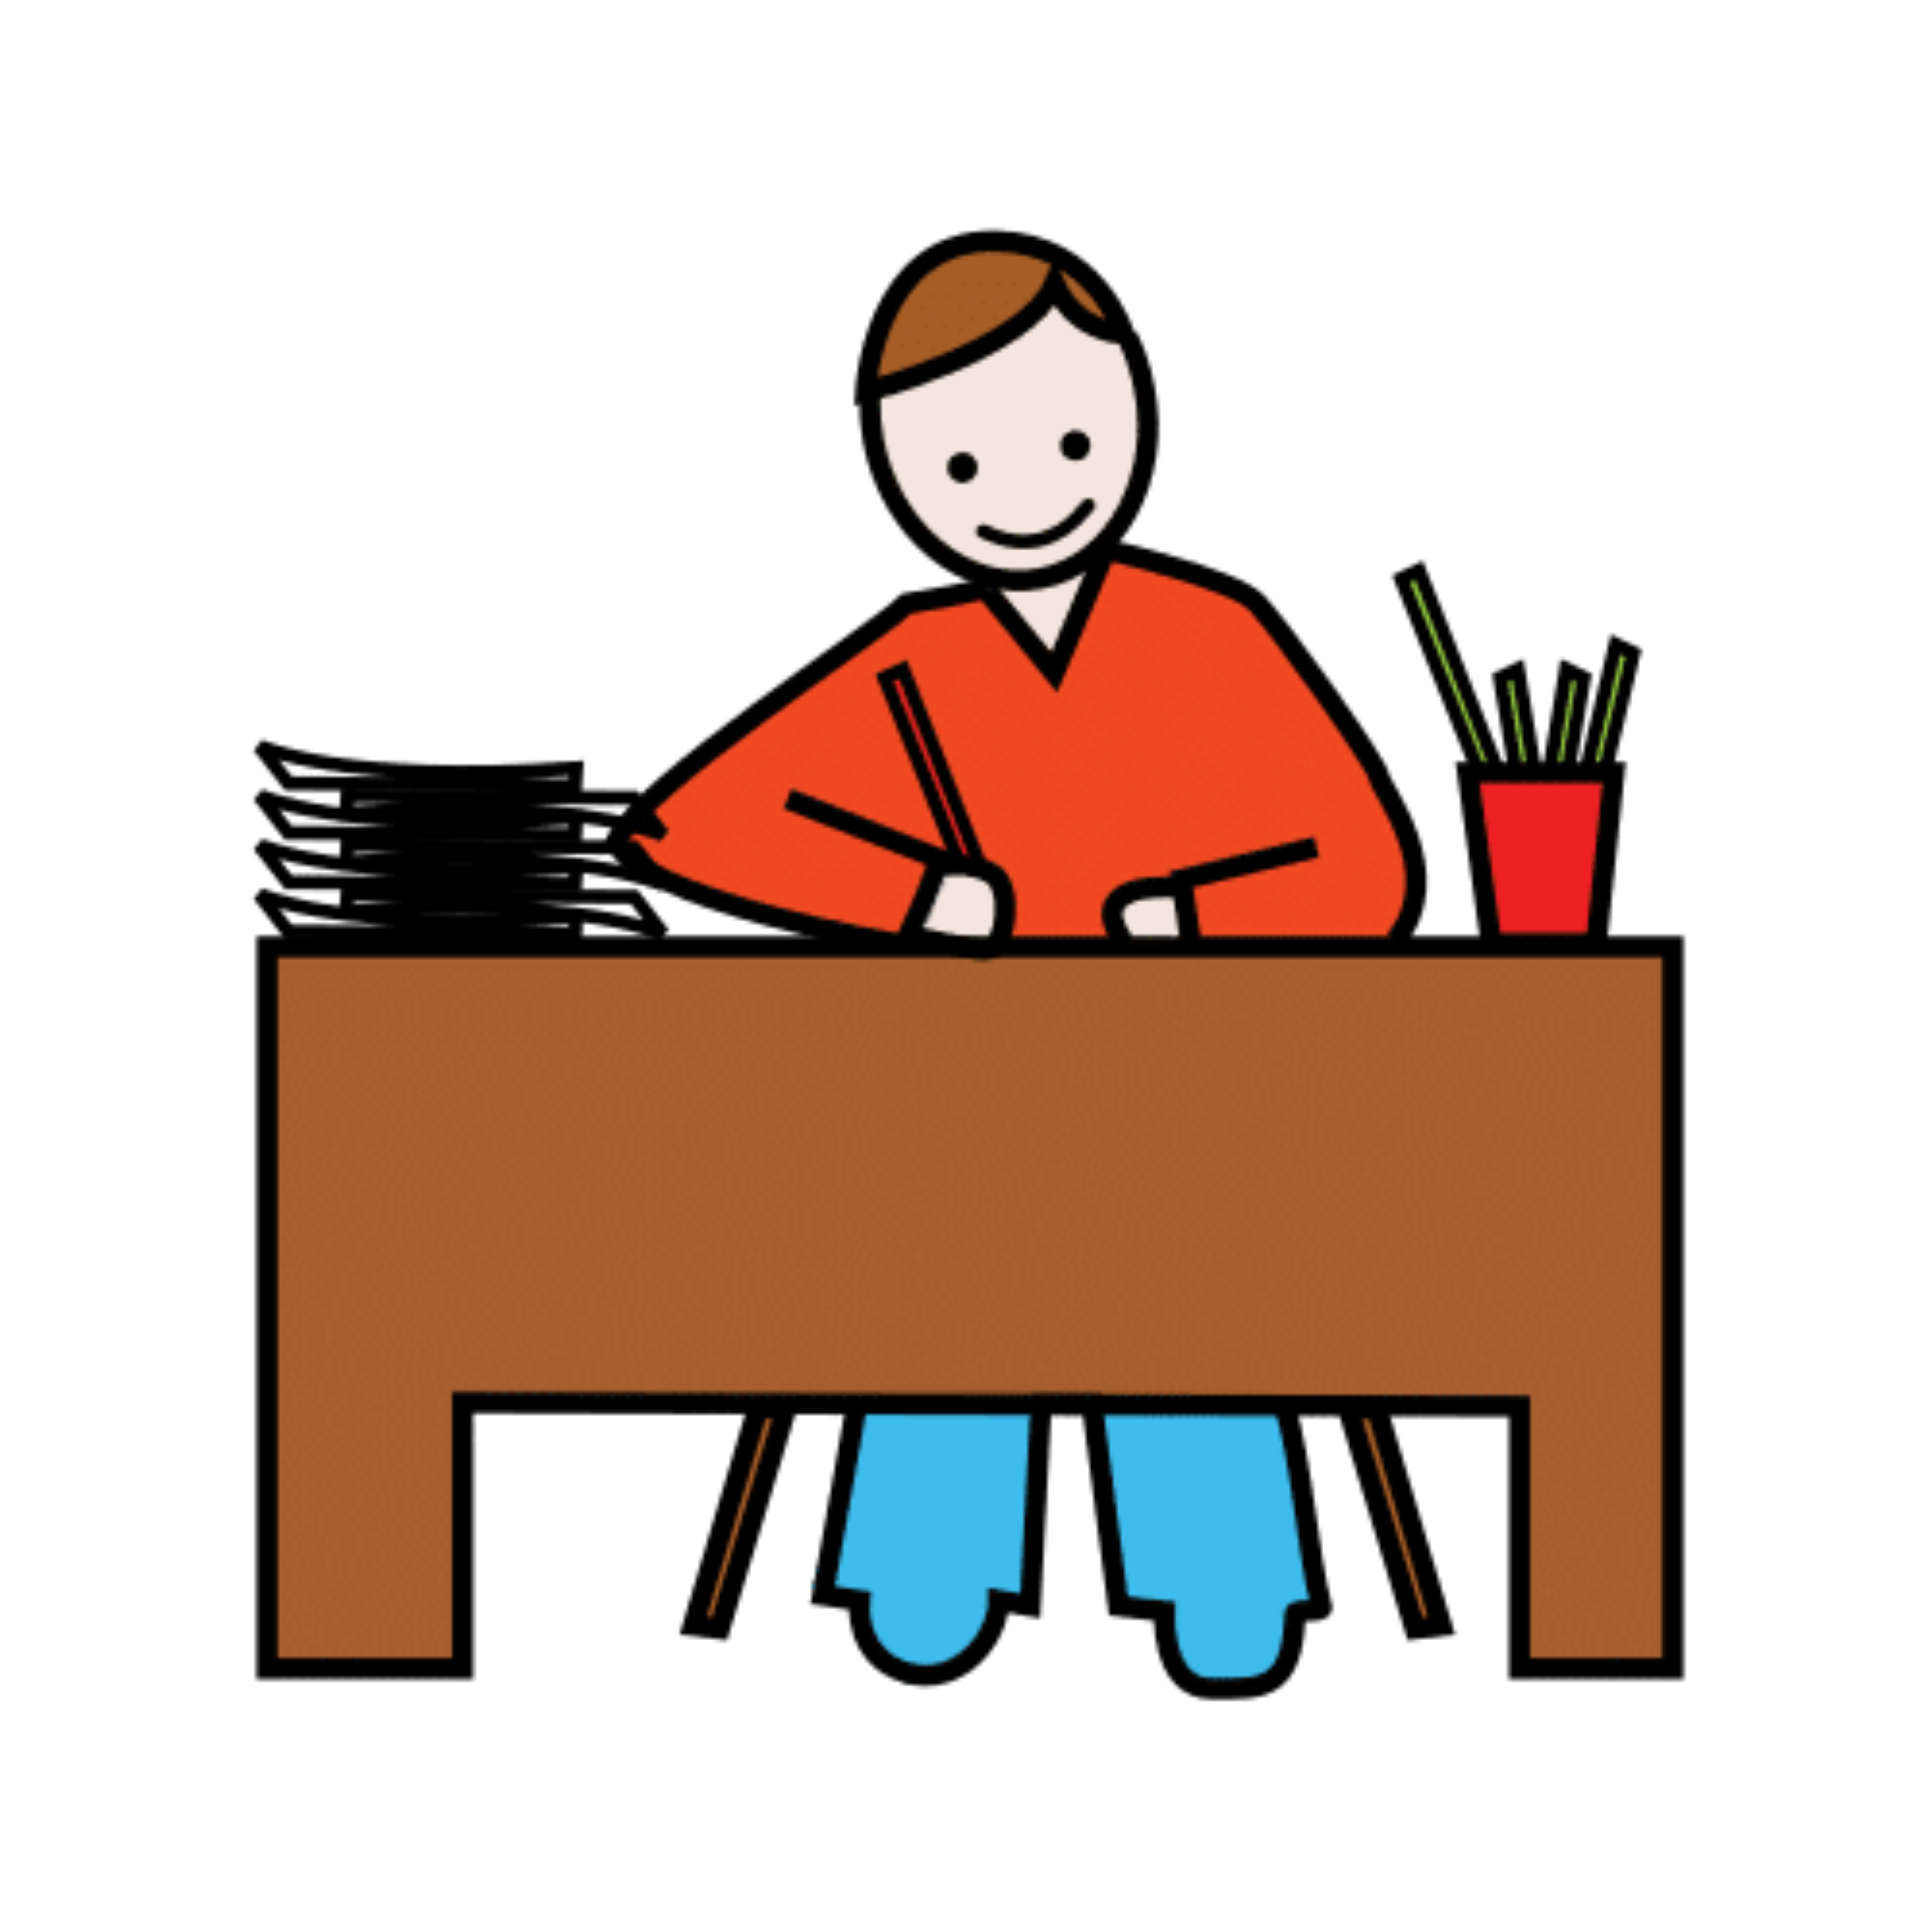 La imagen muestra el dibujo de una persona trabajando sobre un escritorio